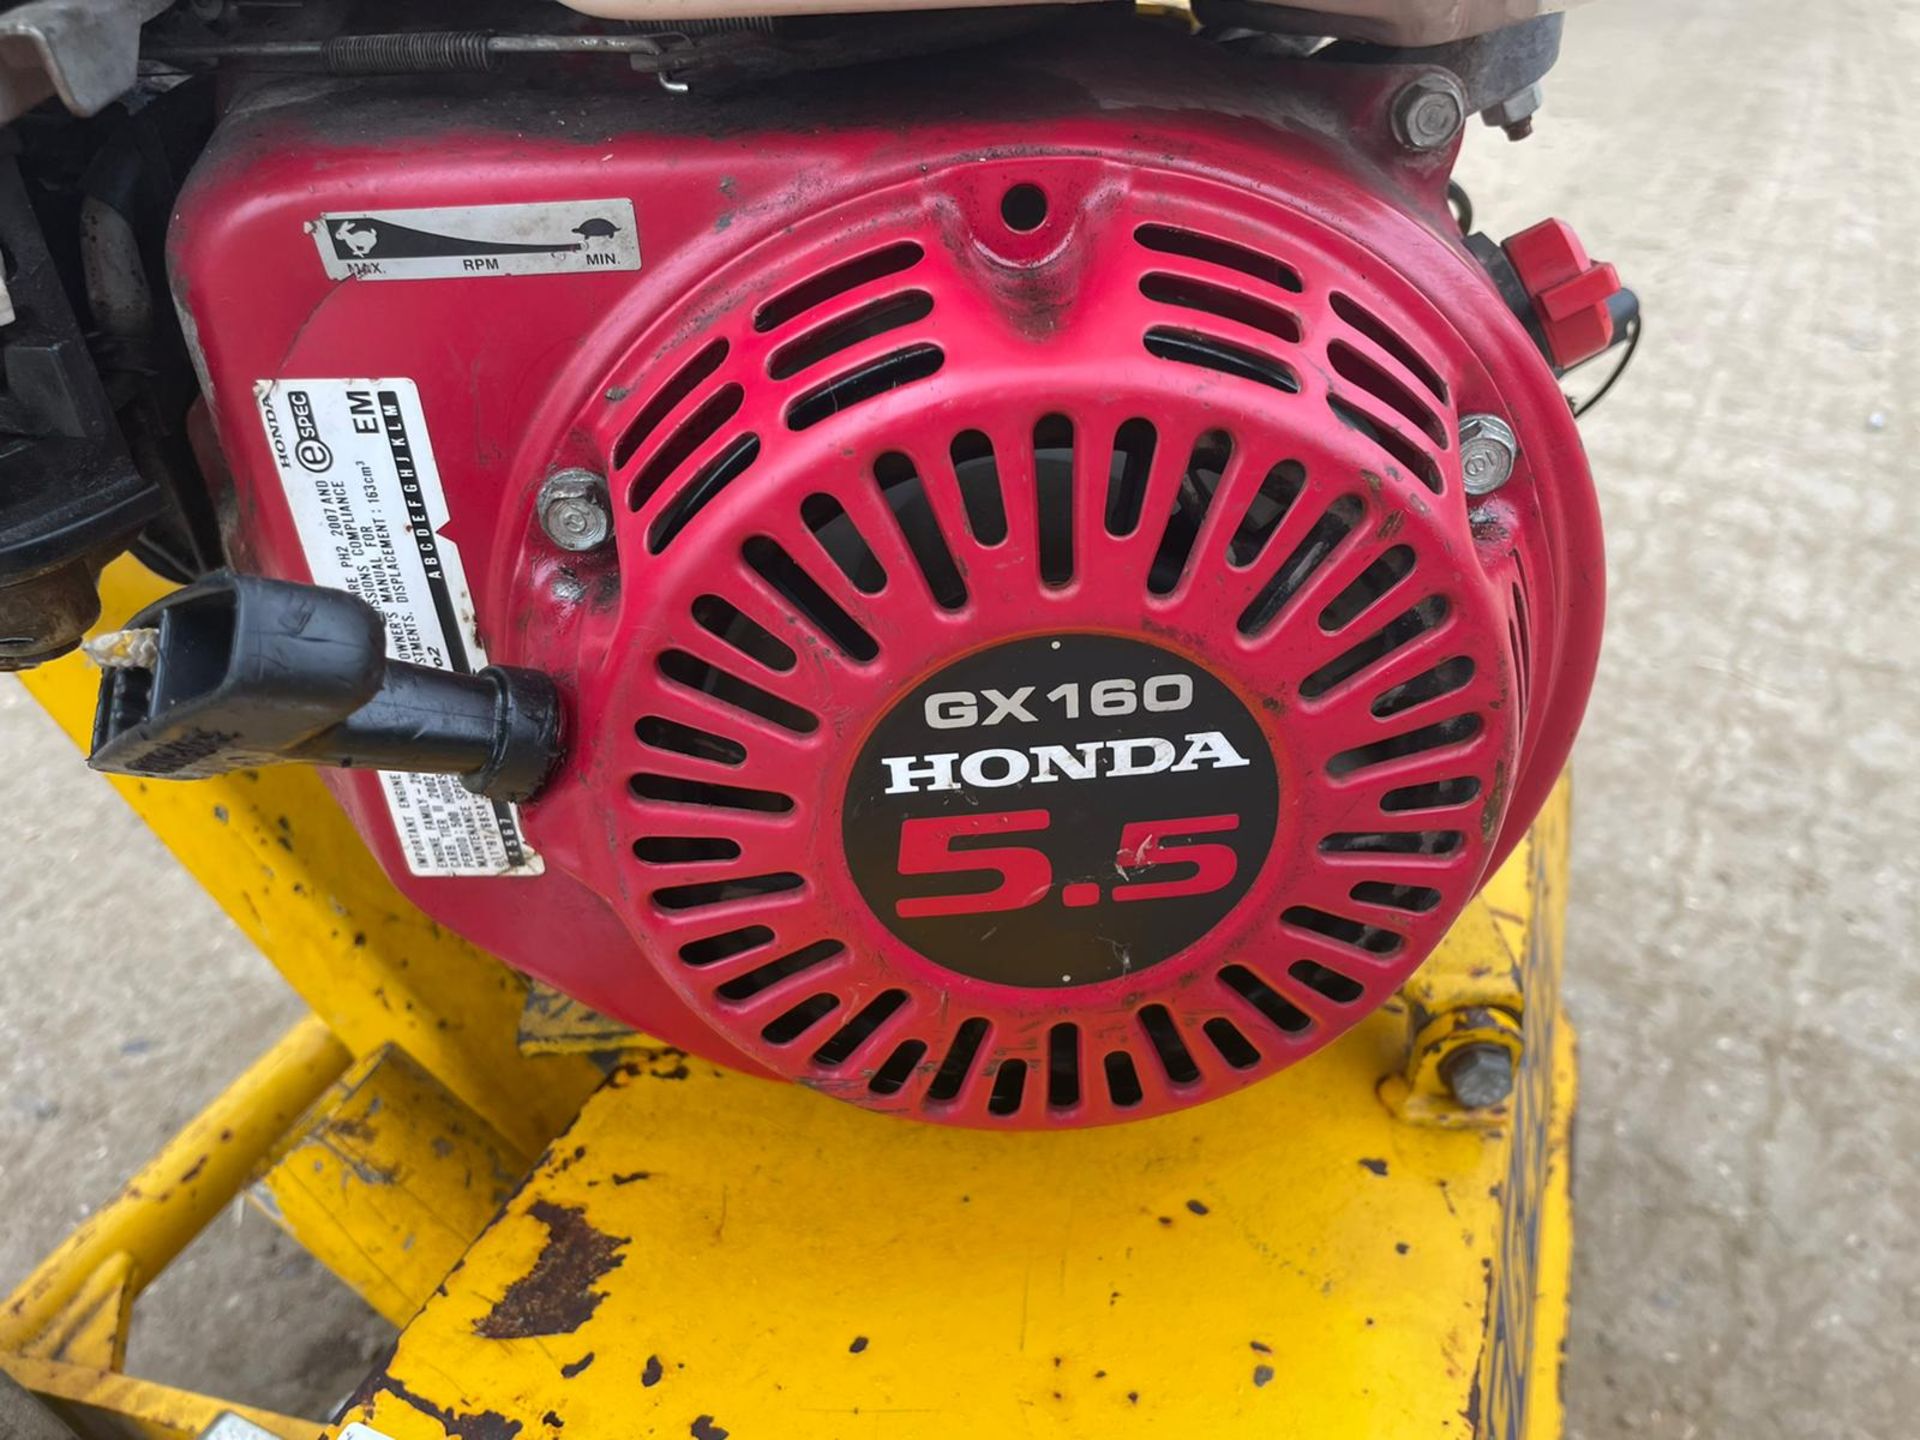 SPE DFG400-2 FLOOR GRINDER, RUNS AND WORKS, HONDA GX160 ENGINE *NO VAT* - Image 5 of 6